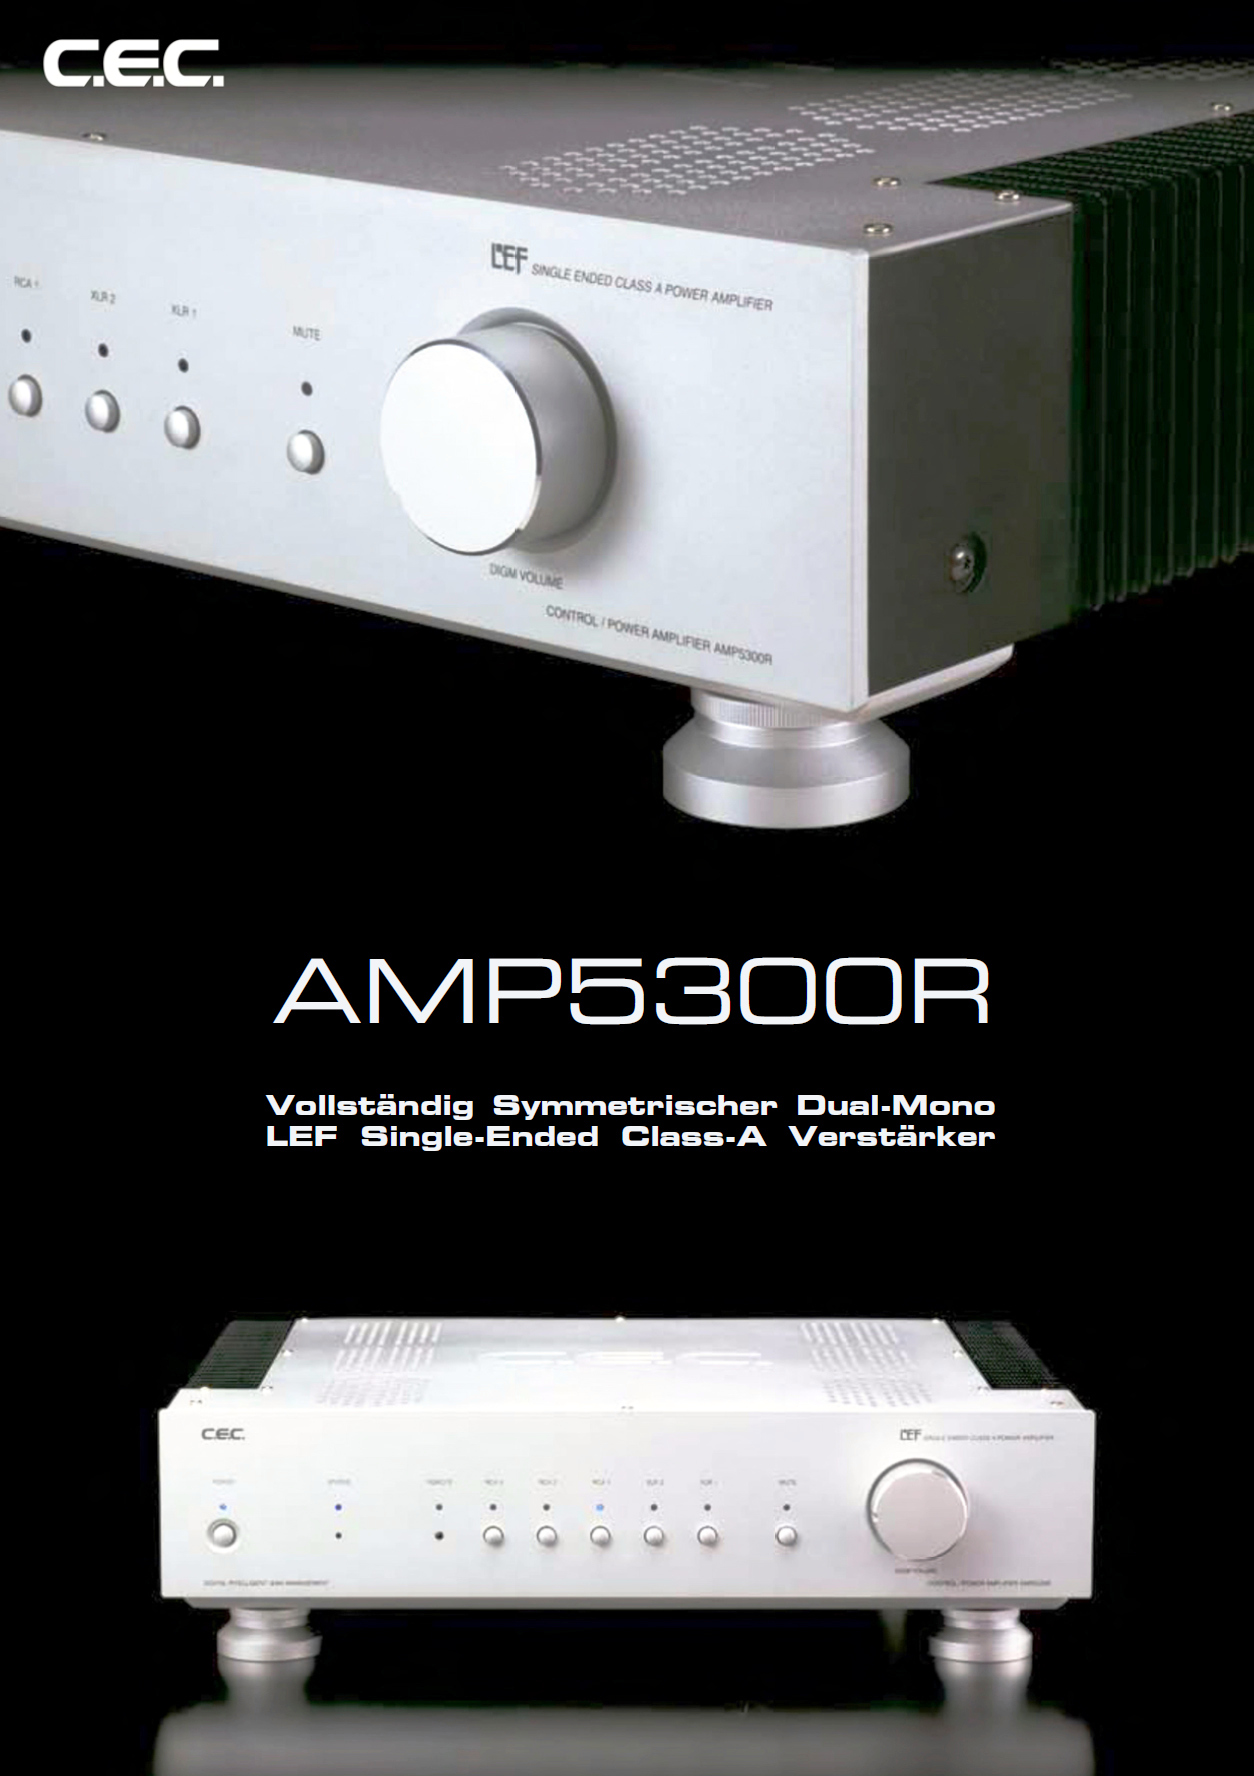 C.E.C. AMP-5300 R-Prospekt-1.jpg